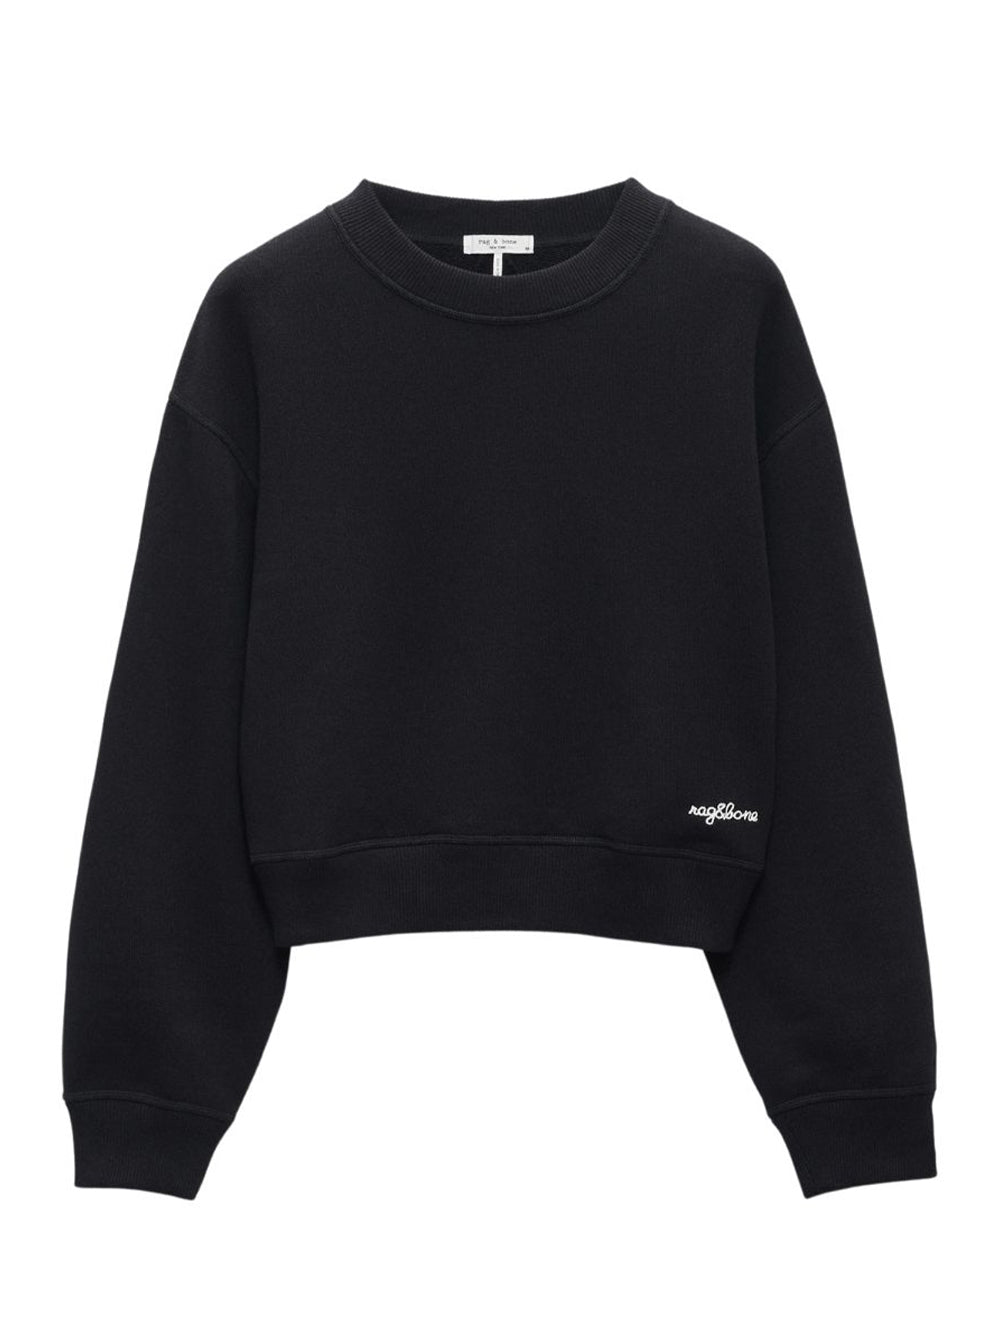 Vintage Terry Sweatshirt Black